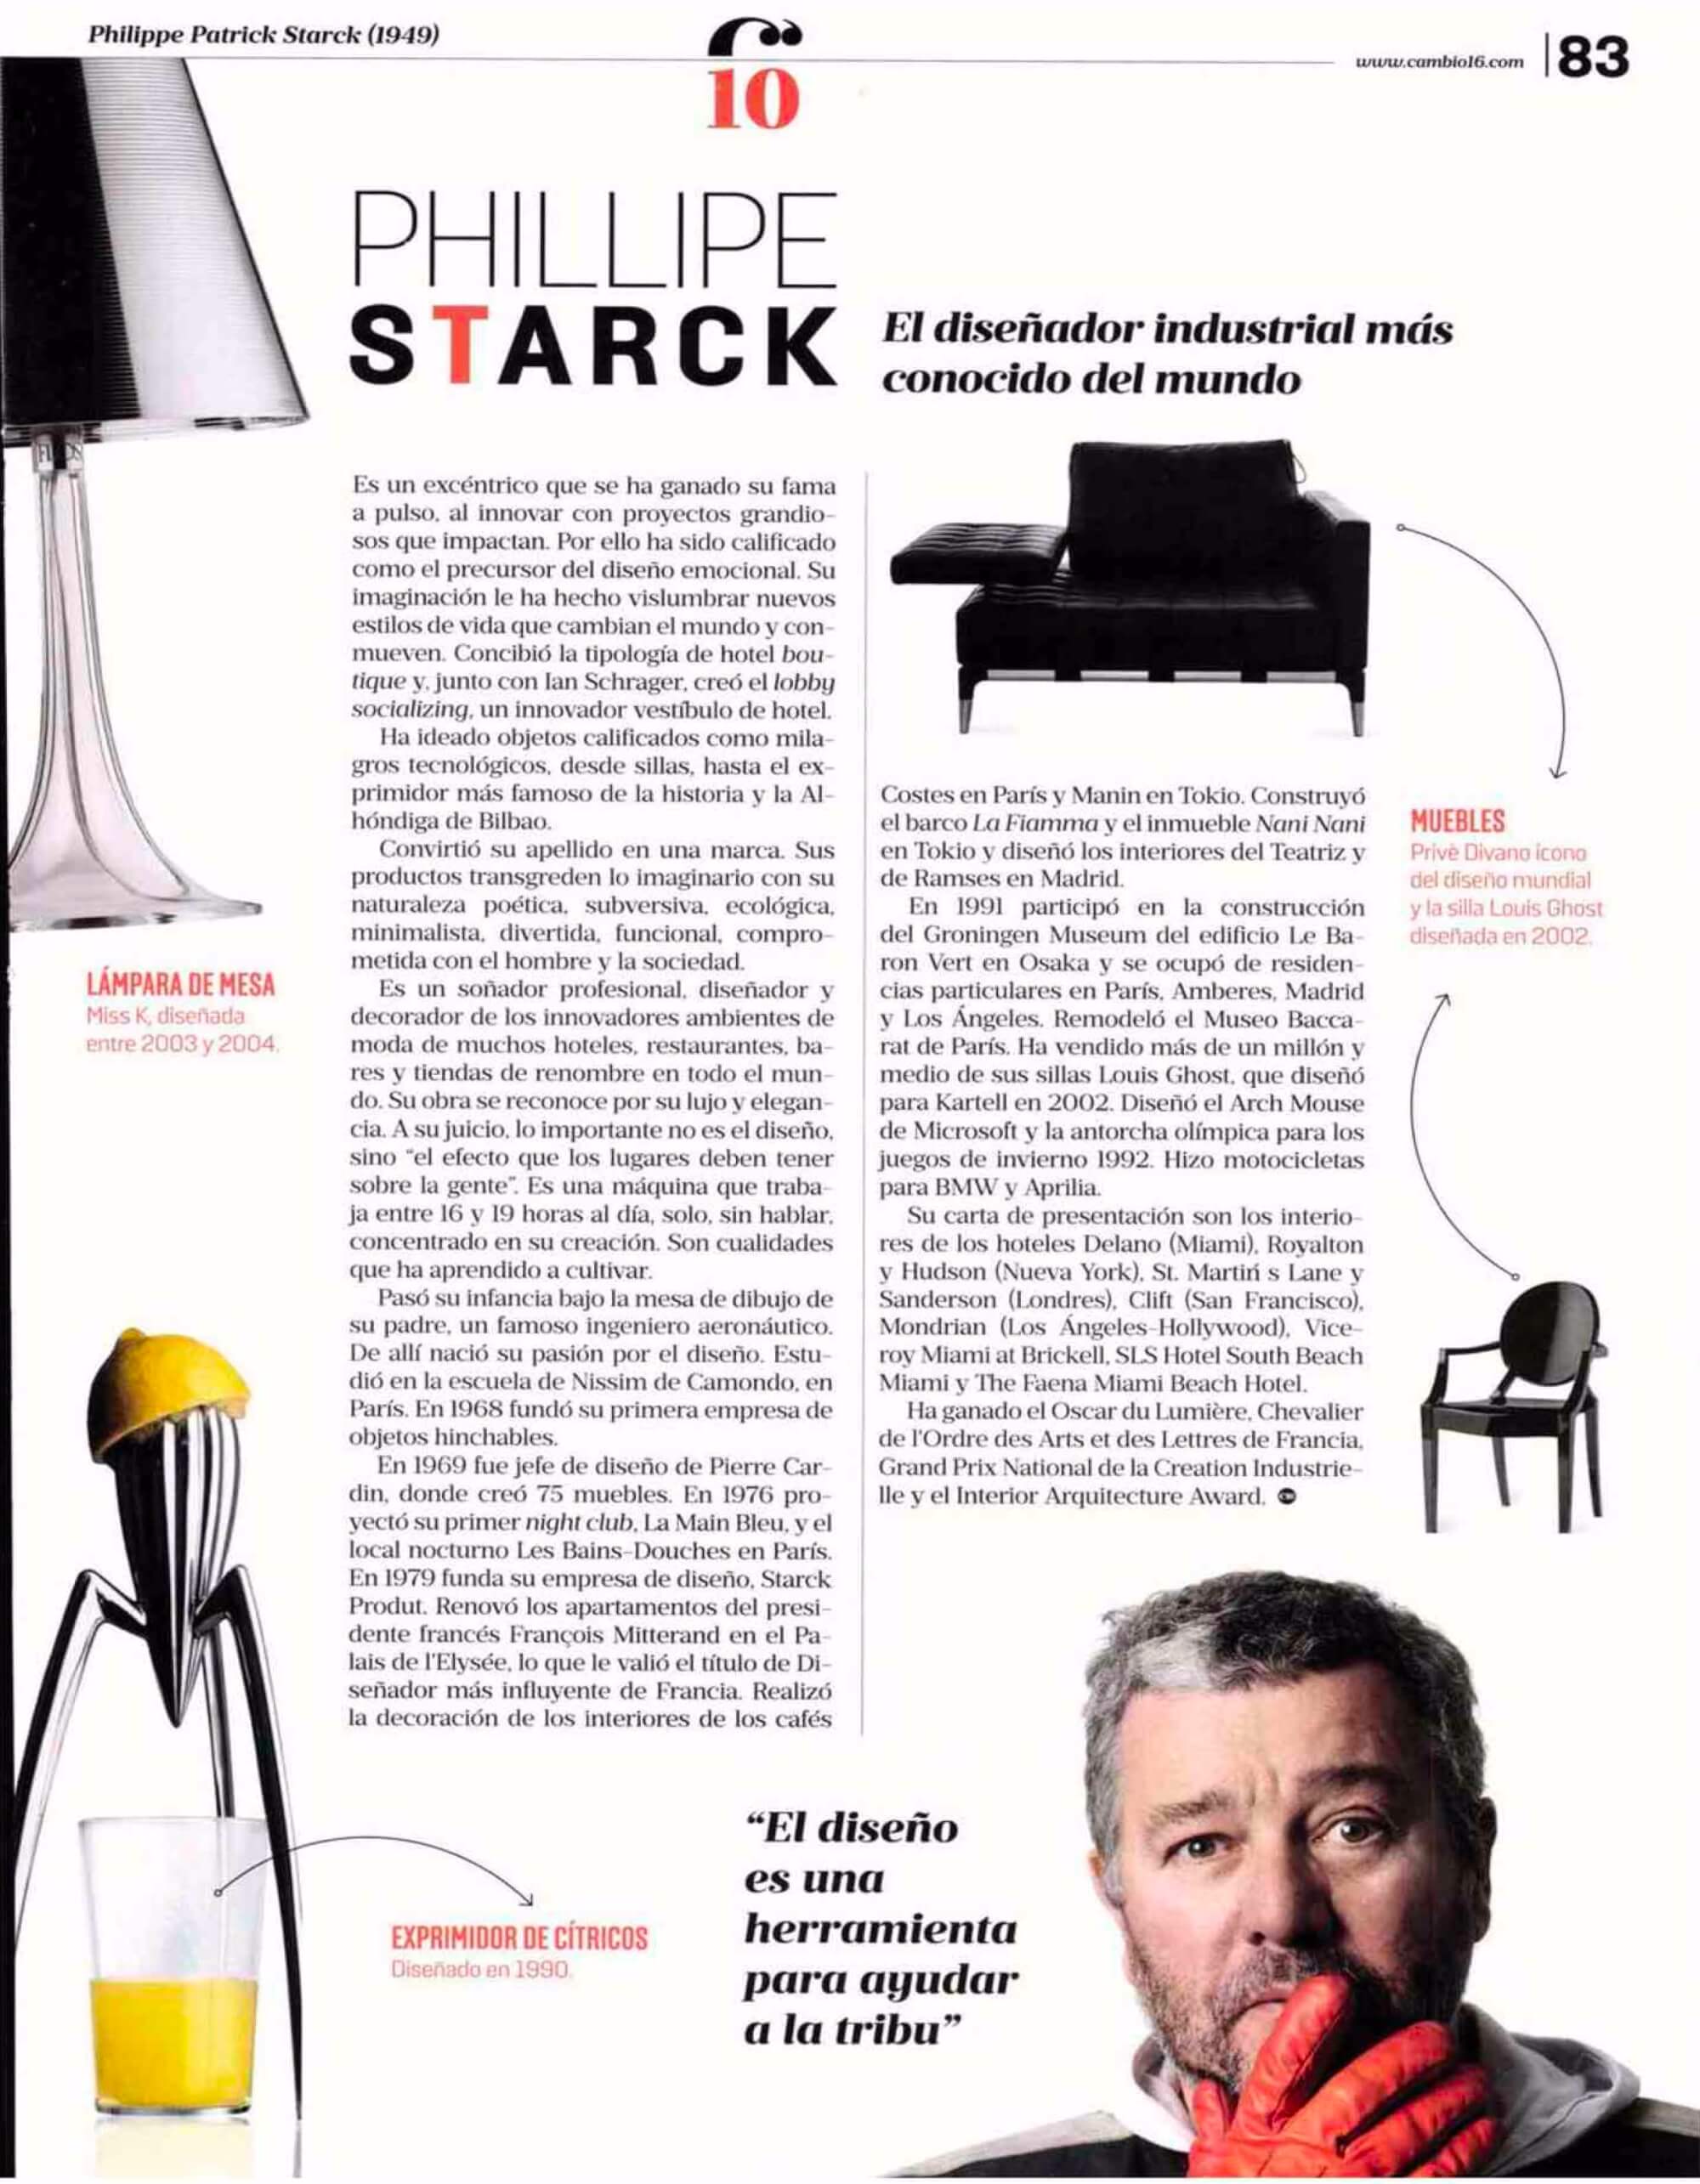 Philippe Starck: El disenador industrial mas conocido del mundo